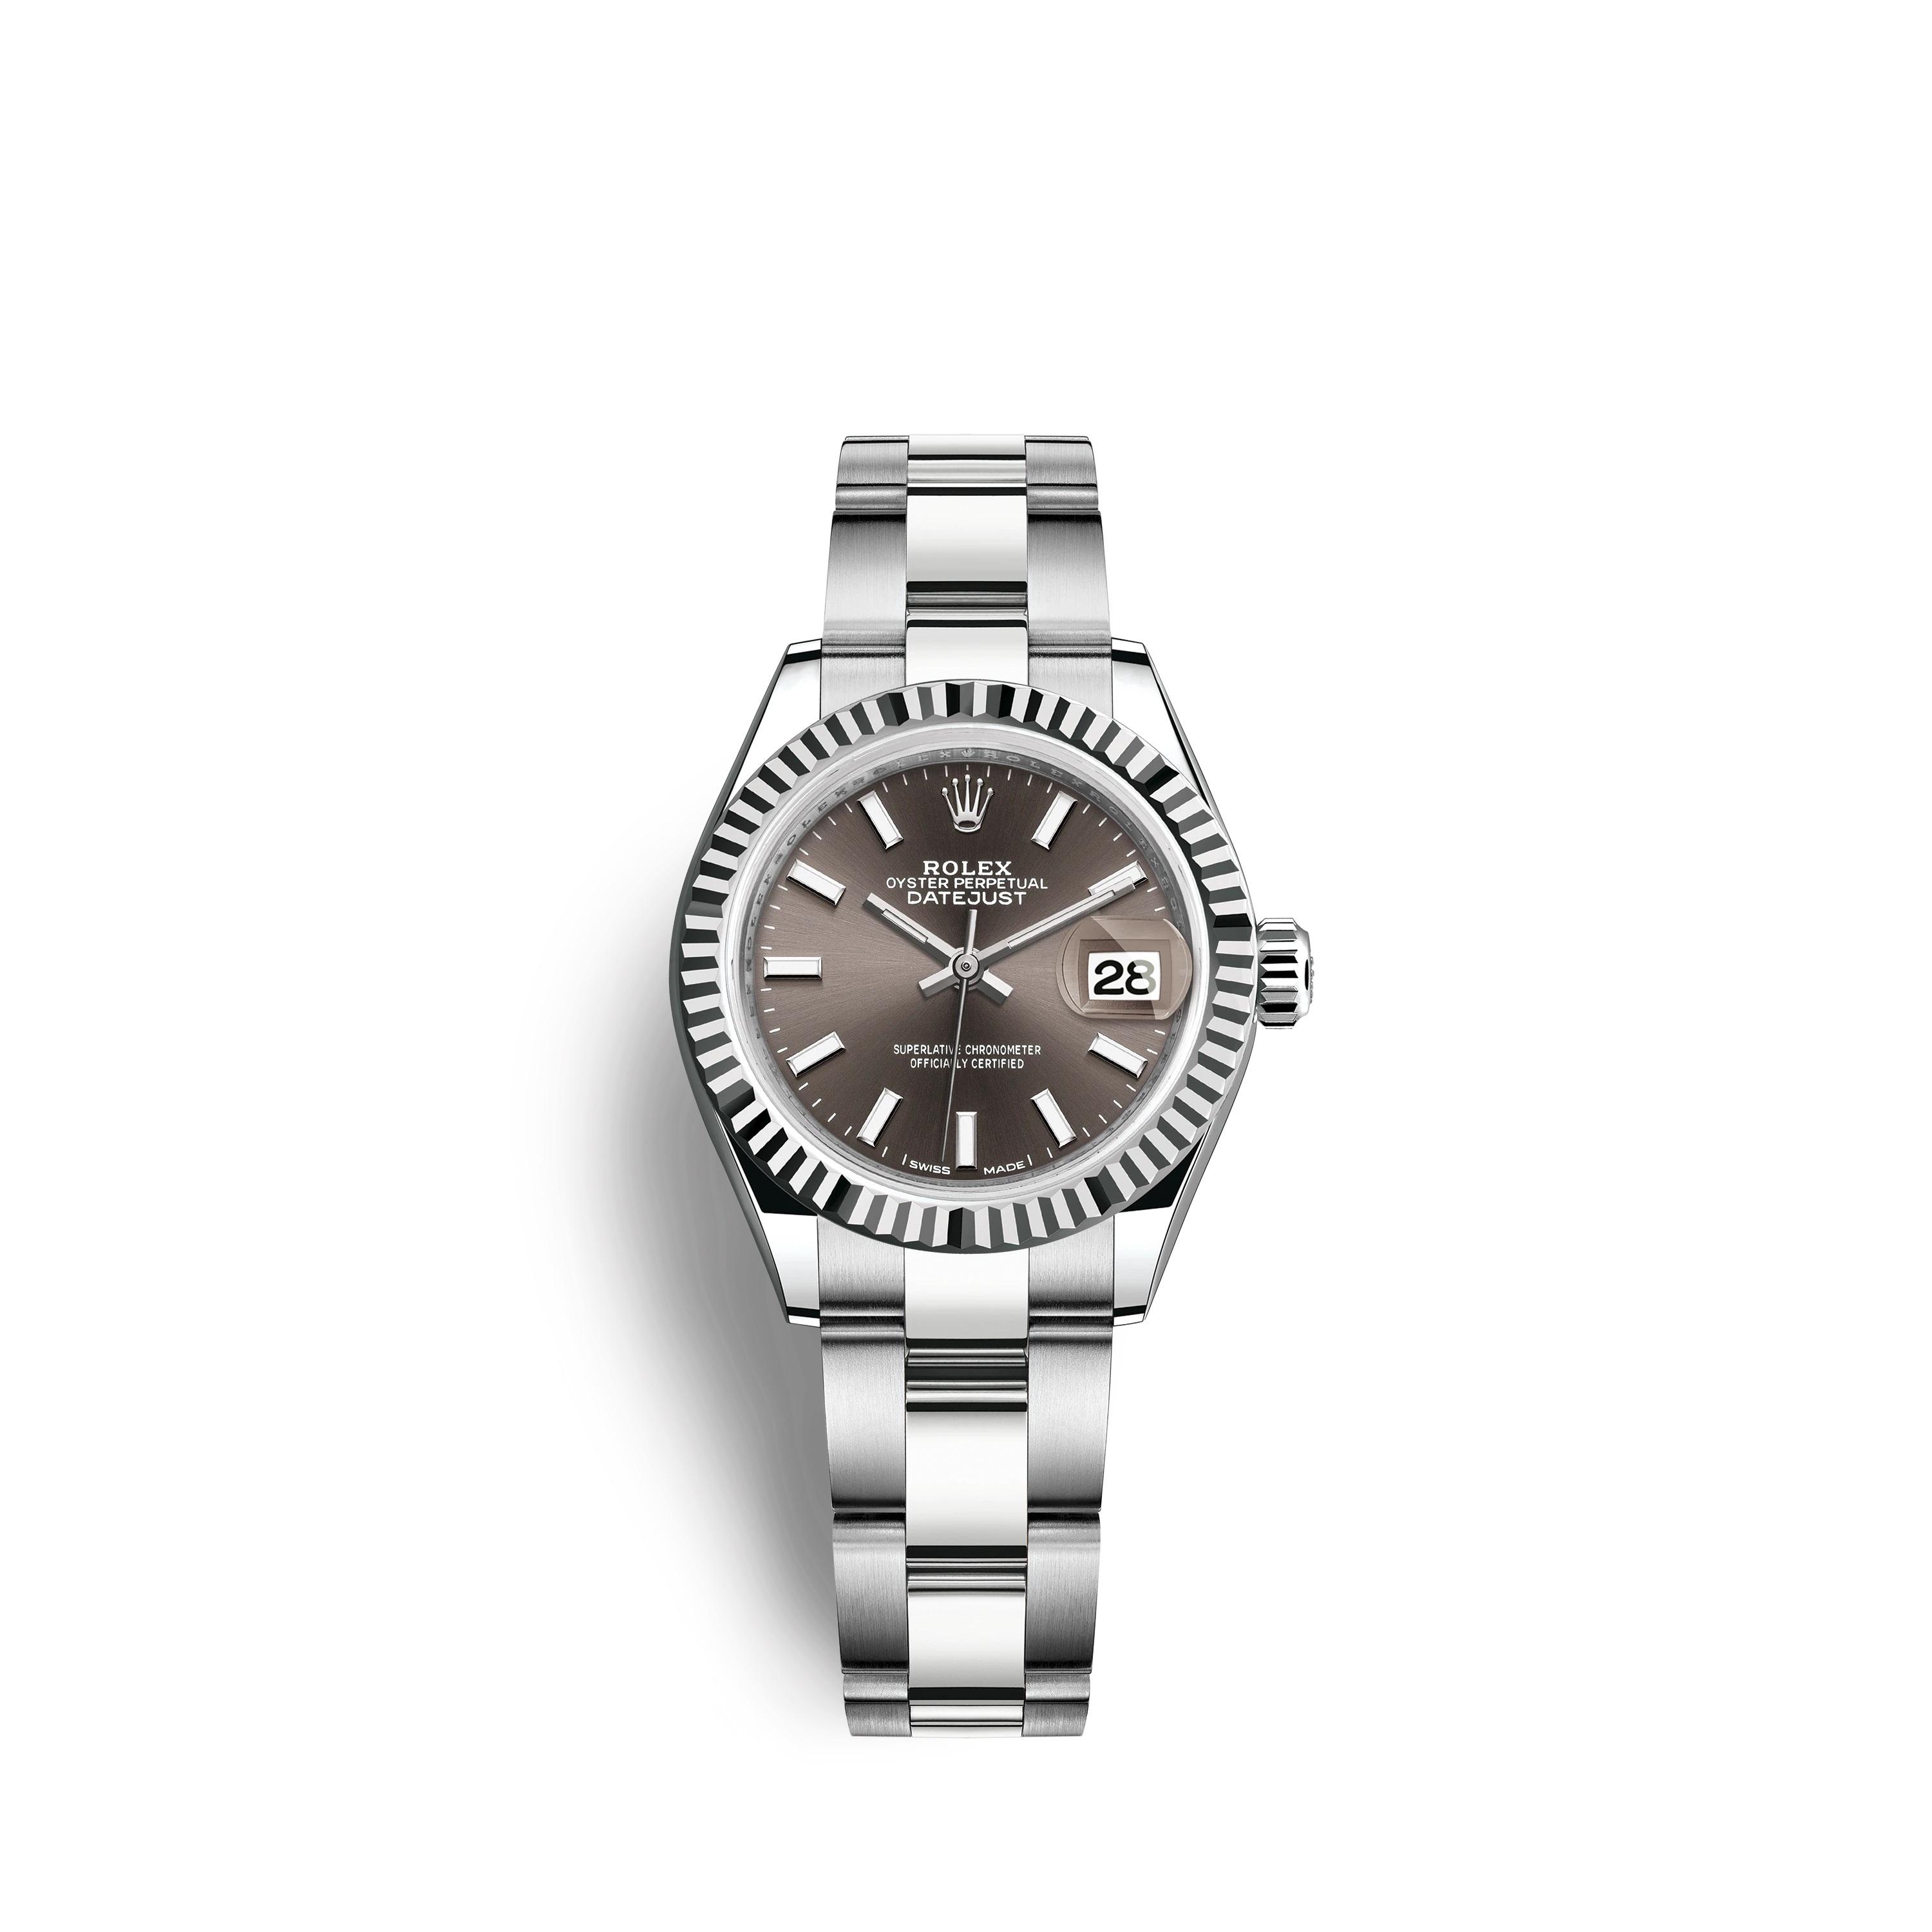 Lady-Datejust 28 279174 White Gold & Stailess Steel Watch (Dark Grey)